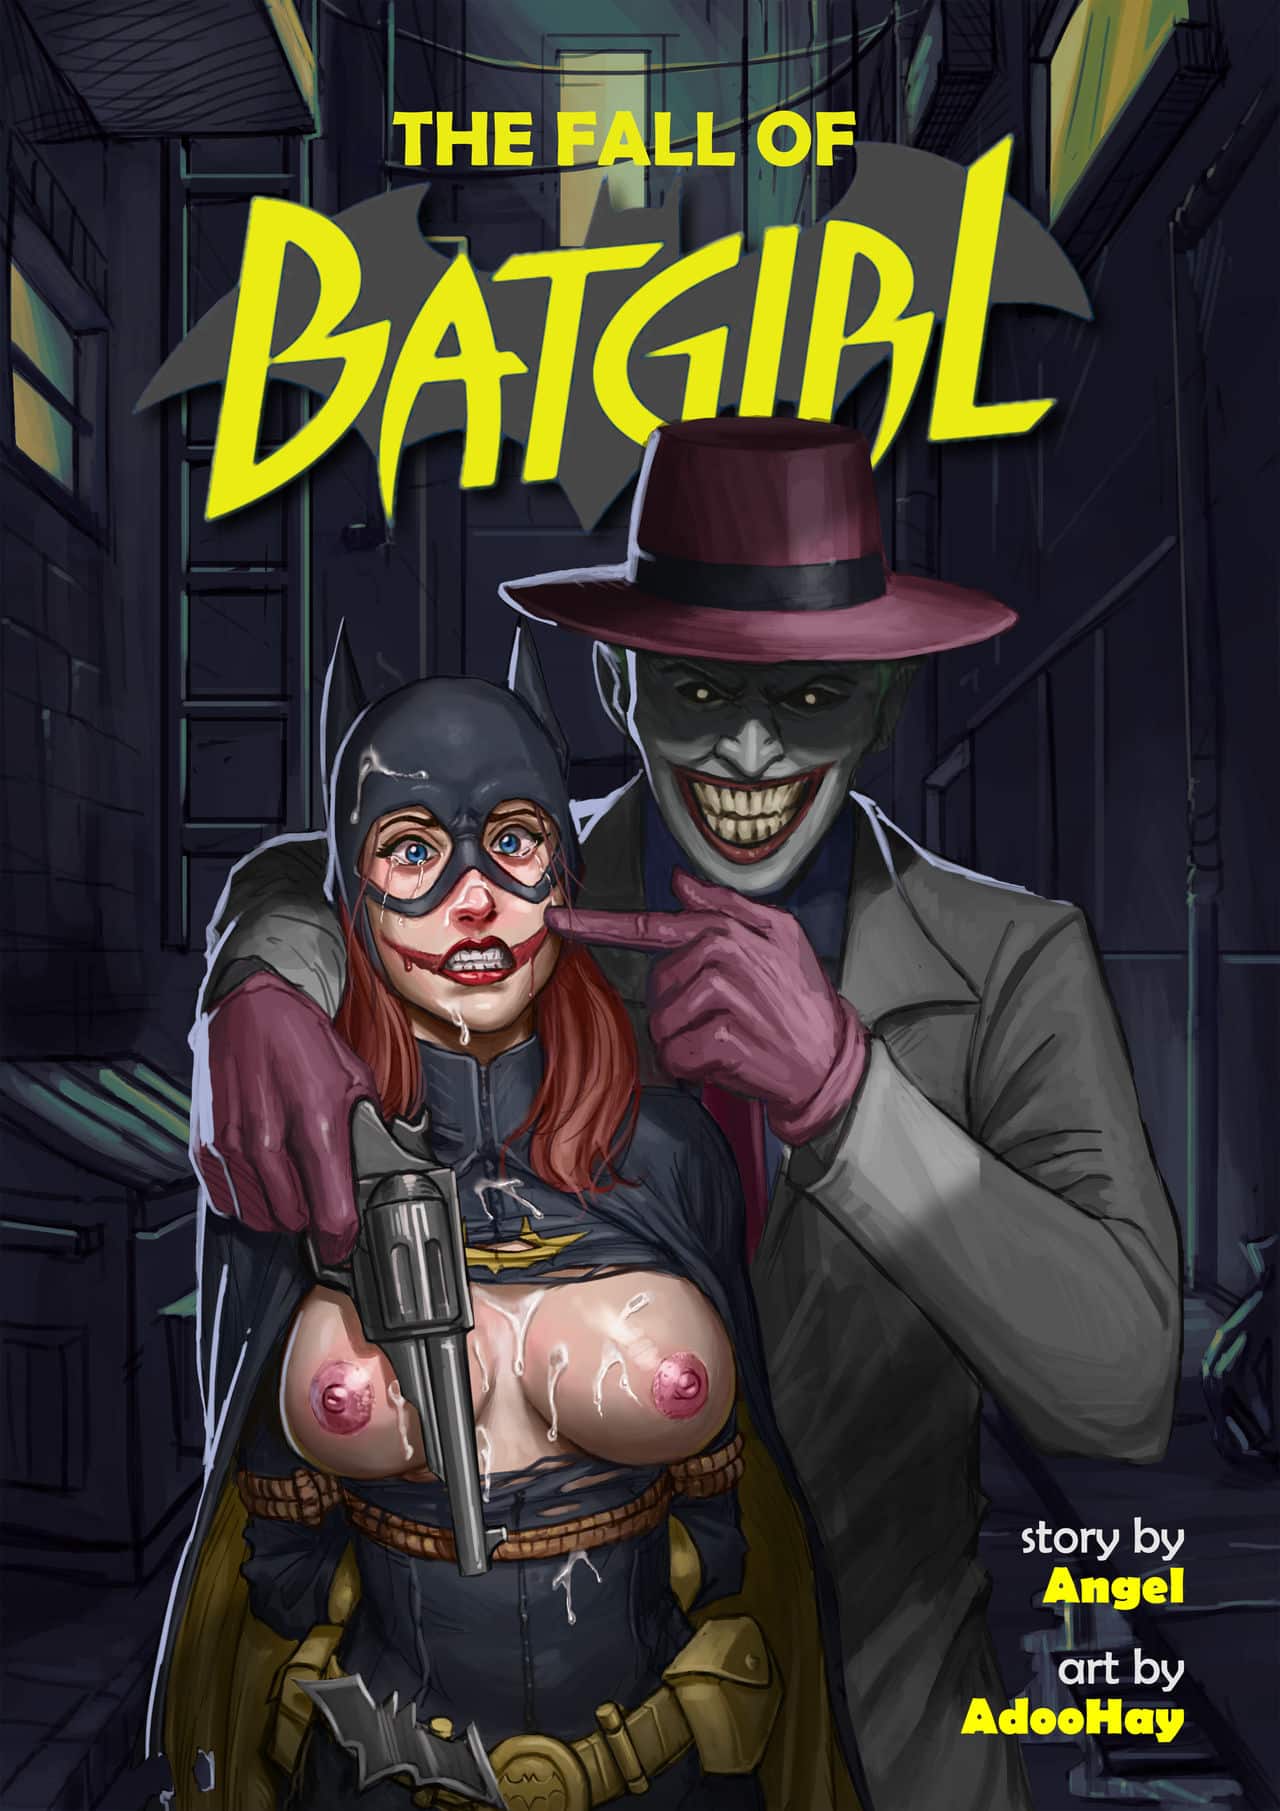 The fall of batgirl comic